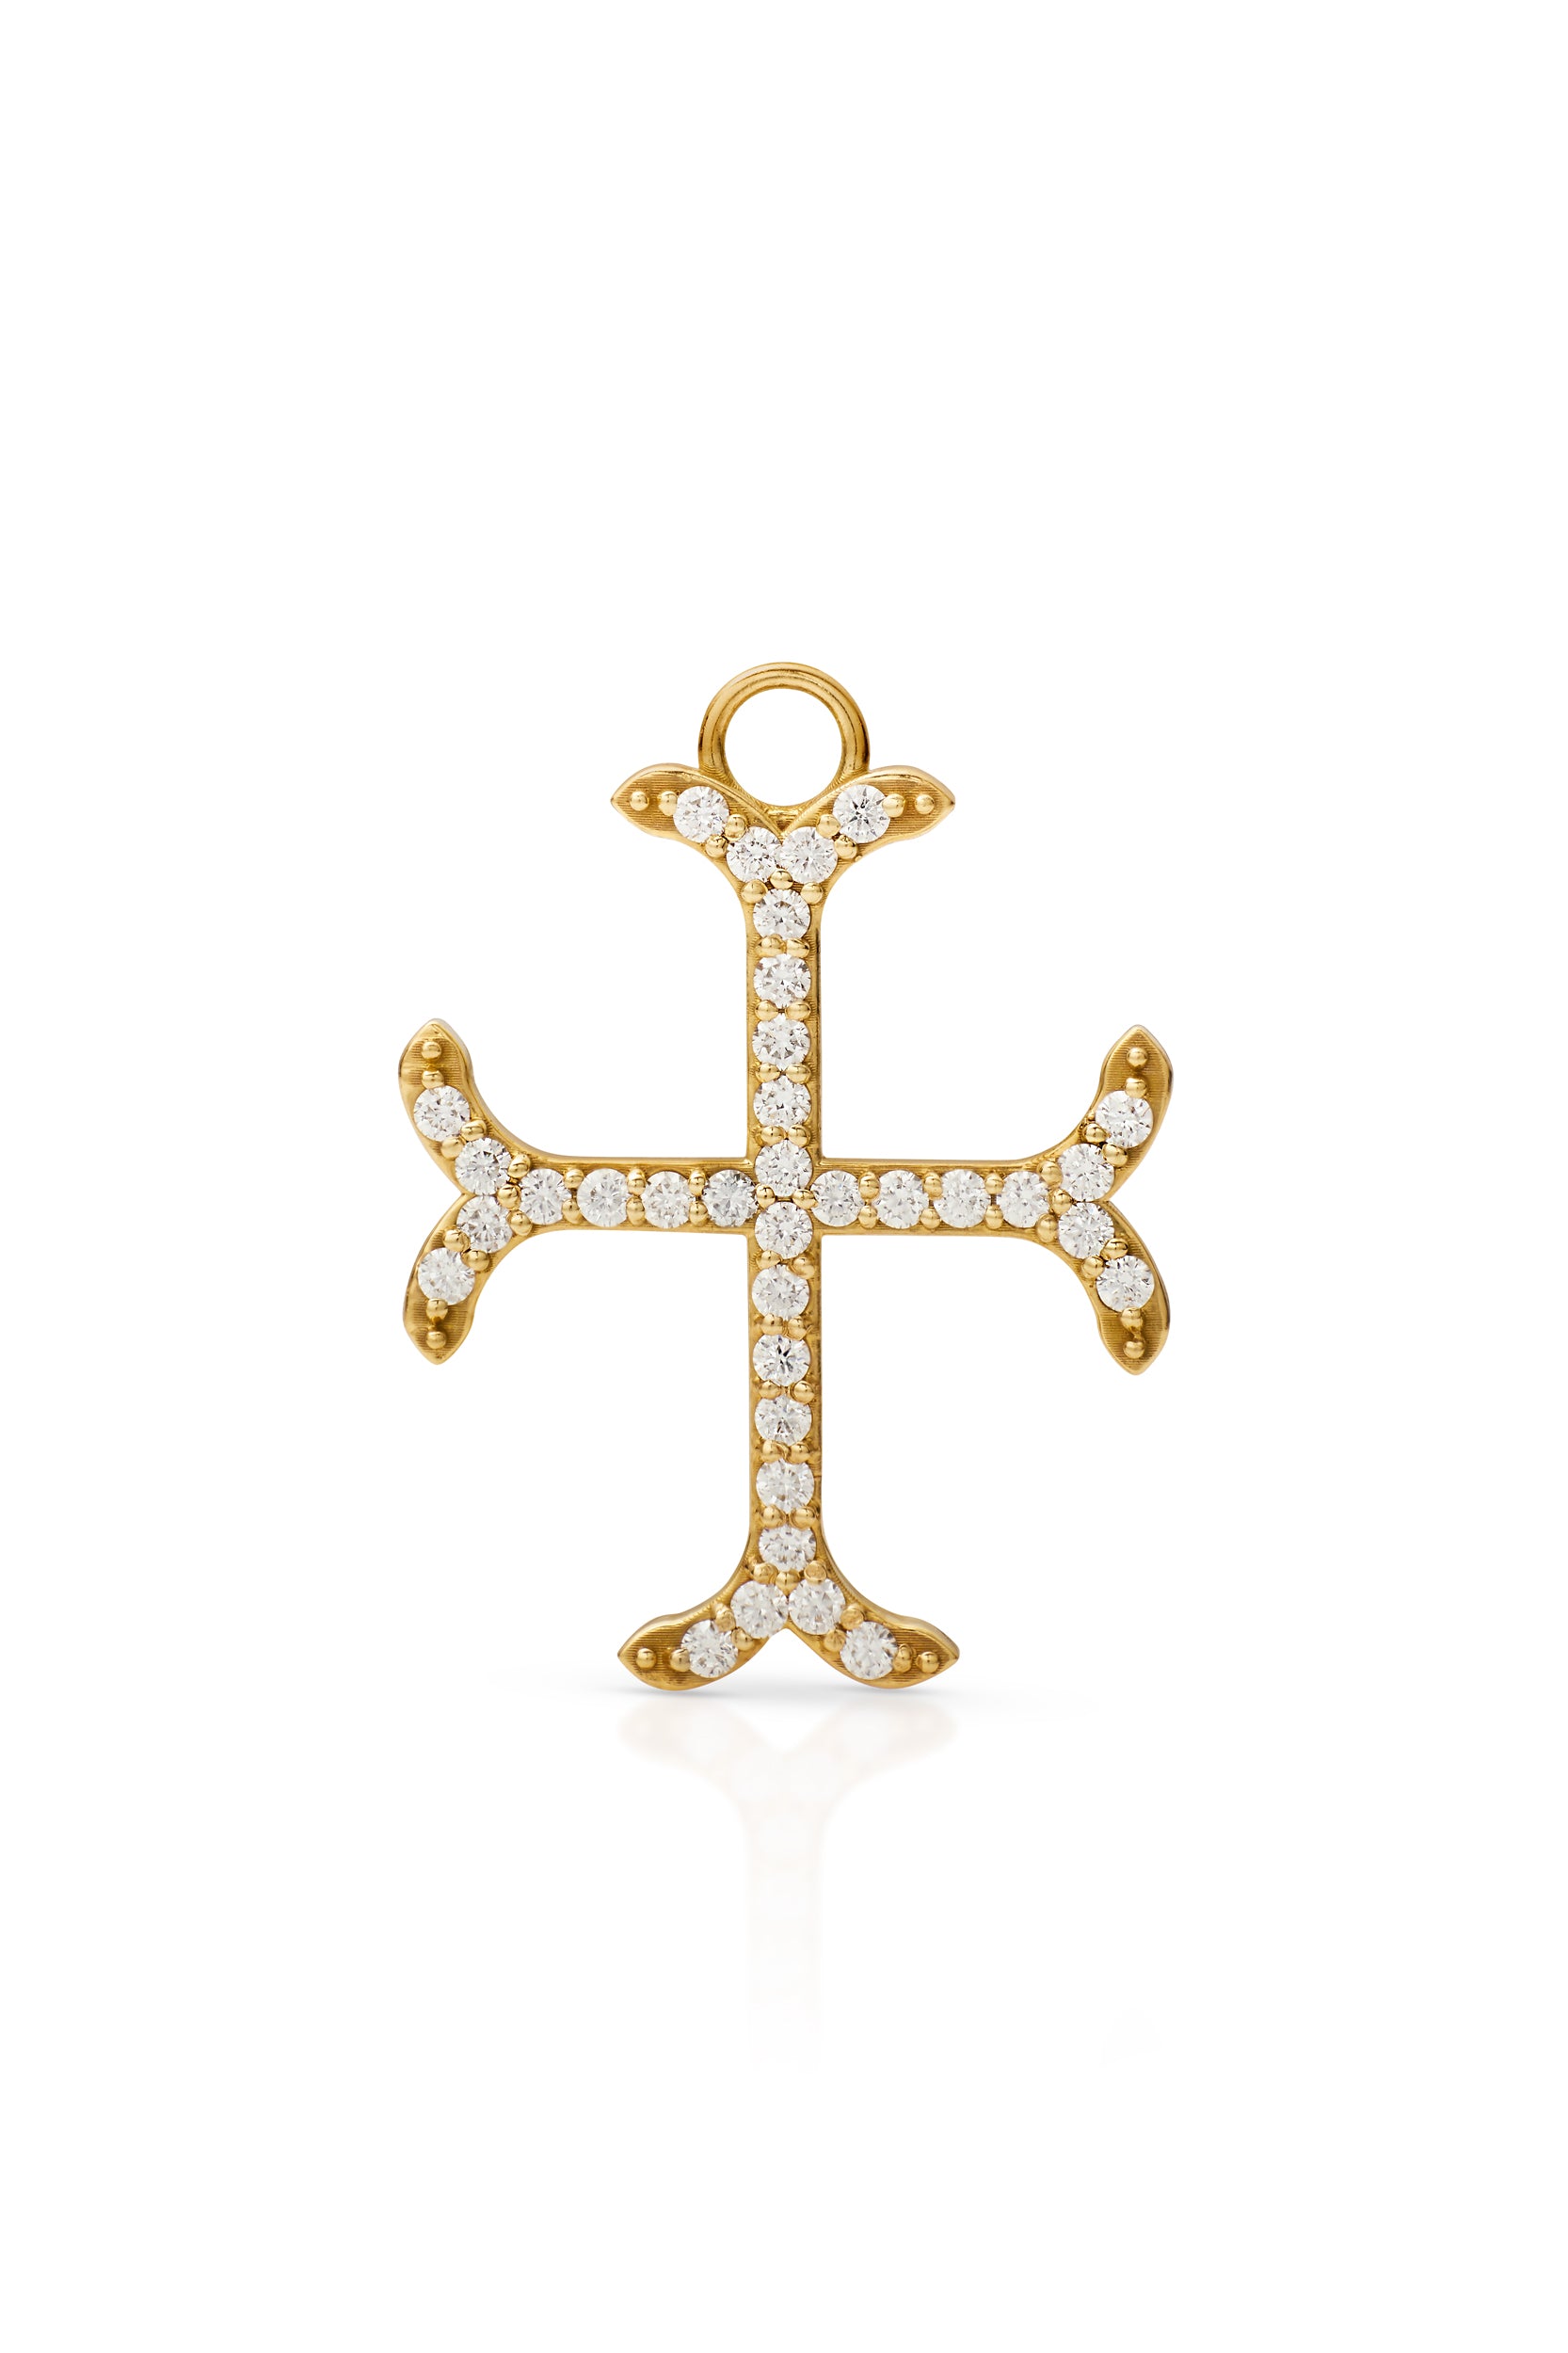 18KY Diamond Moline Cross with Diamonds